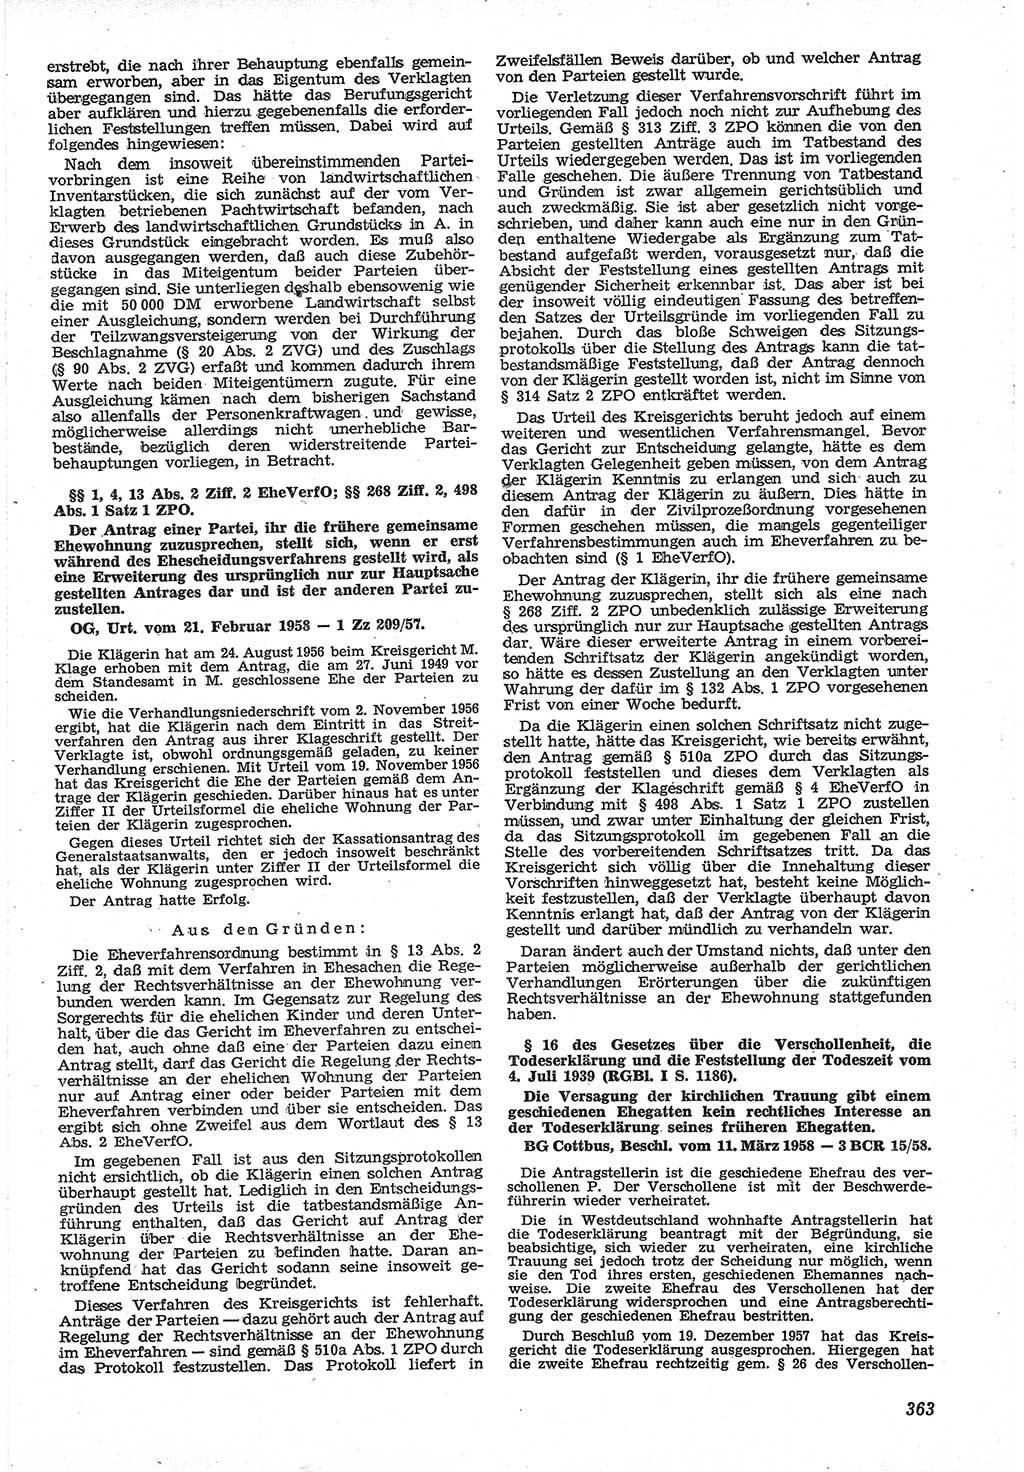 Neue Justiz (NJ), Zeitschrift für Recht und Rechtswissenschaft [Deutsche Demokratische Republik (DDR)], 12. Jahrgang 1958, Seite 363 (NJ DDR 1958, S. 363)